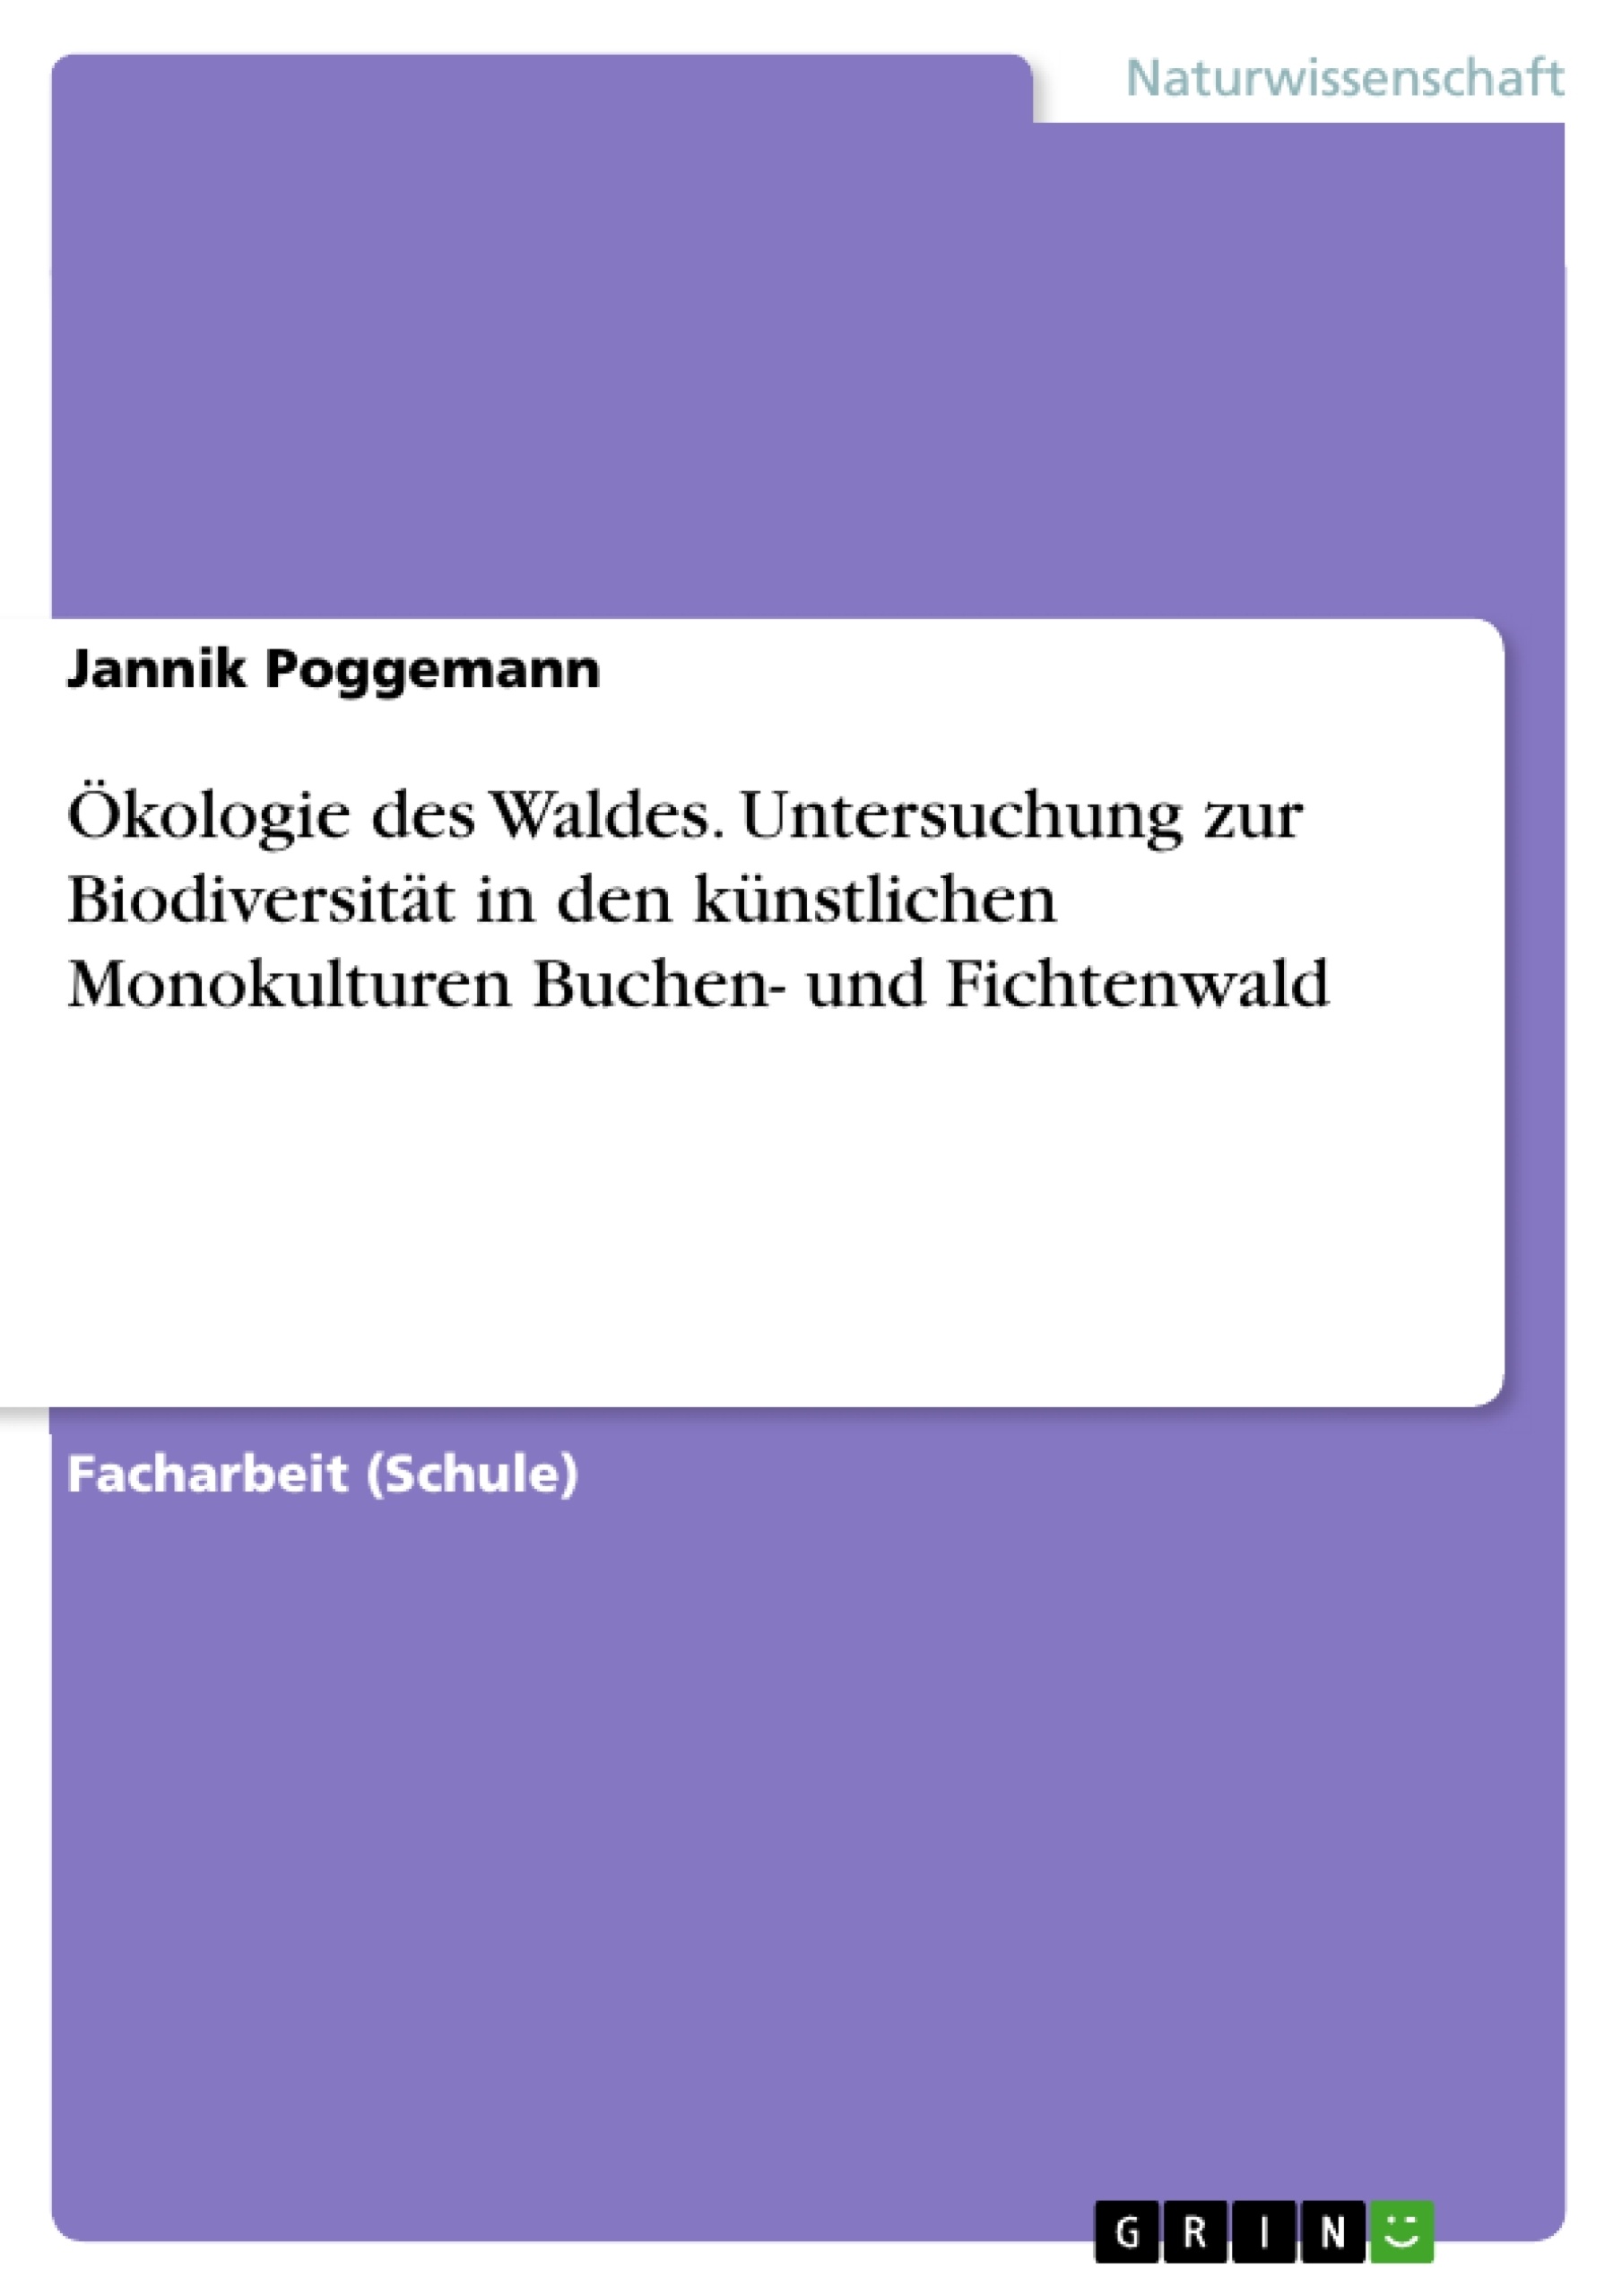 Titel: Ökologie des Waldes. Untersuchung zur Biodiversität in den künstlichen Monokulturen Buchen- und Fichtenwald